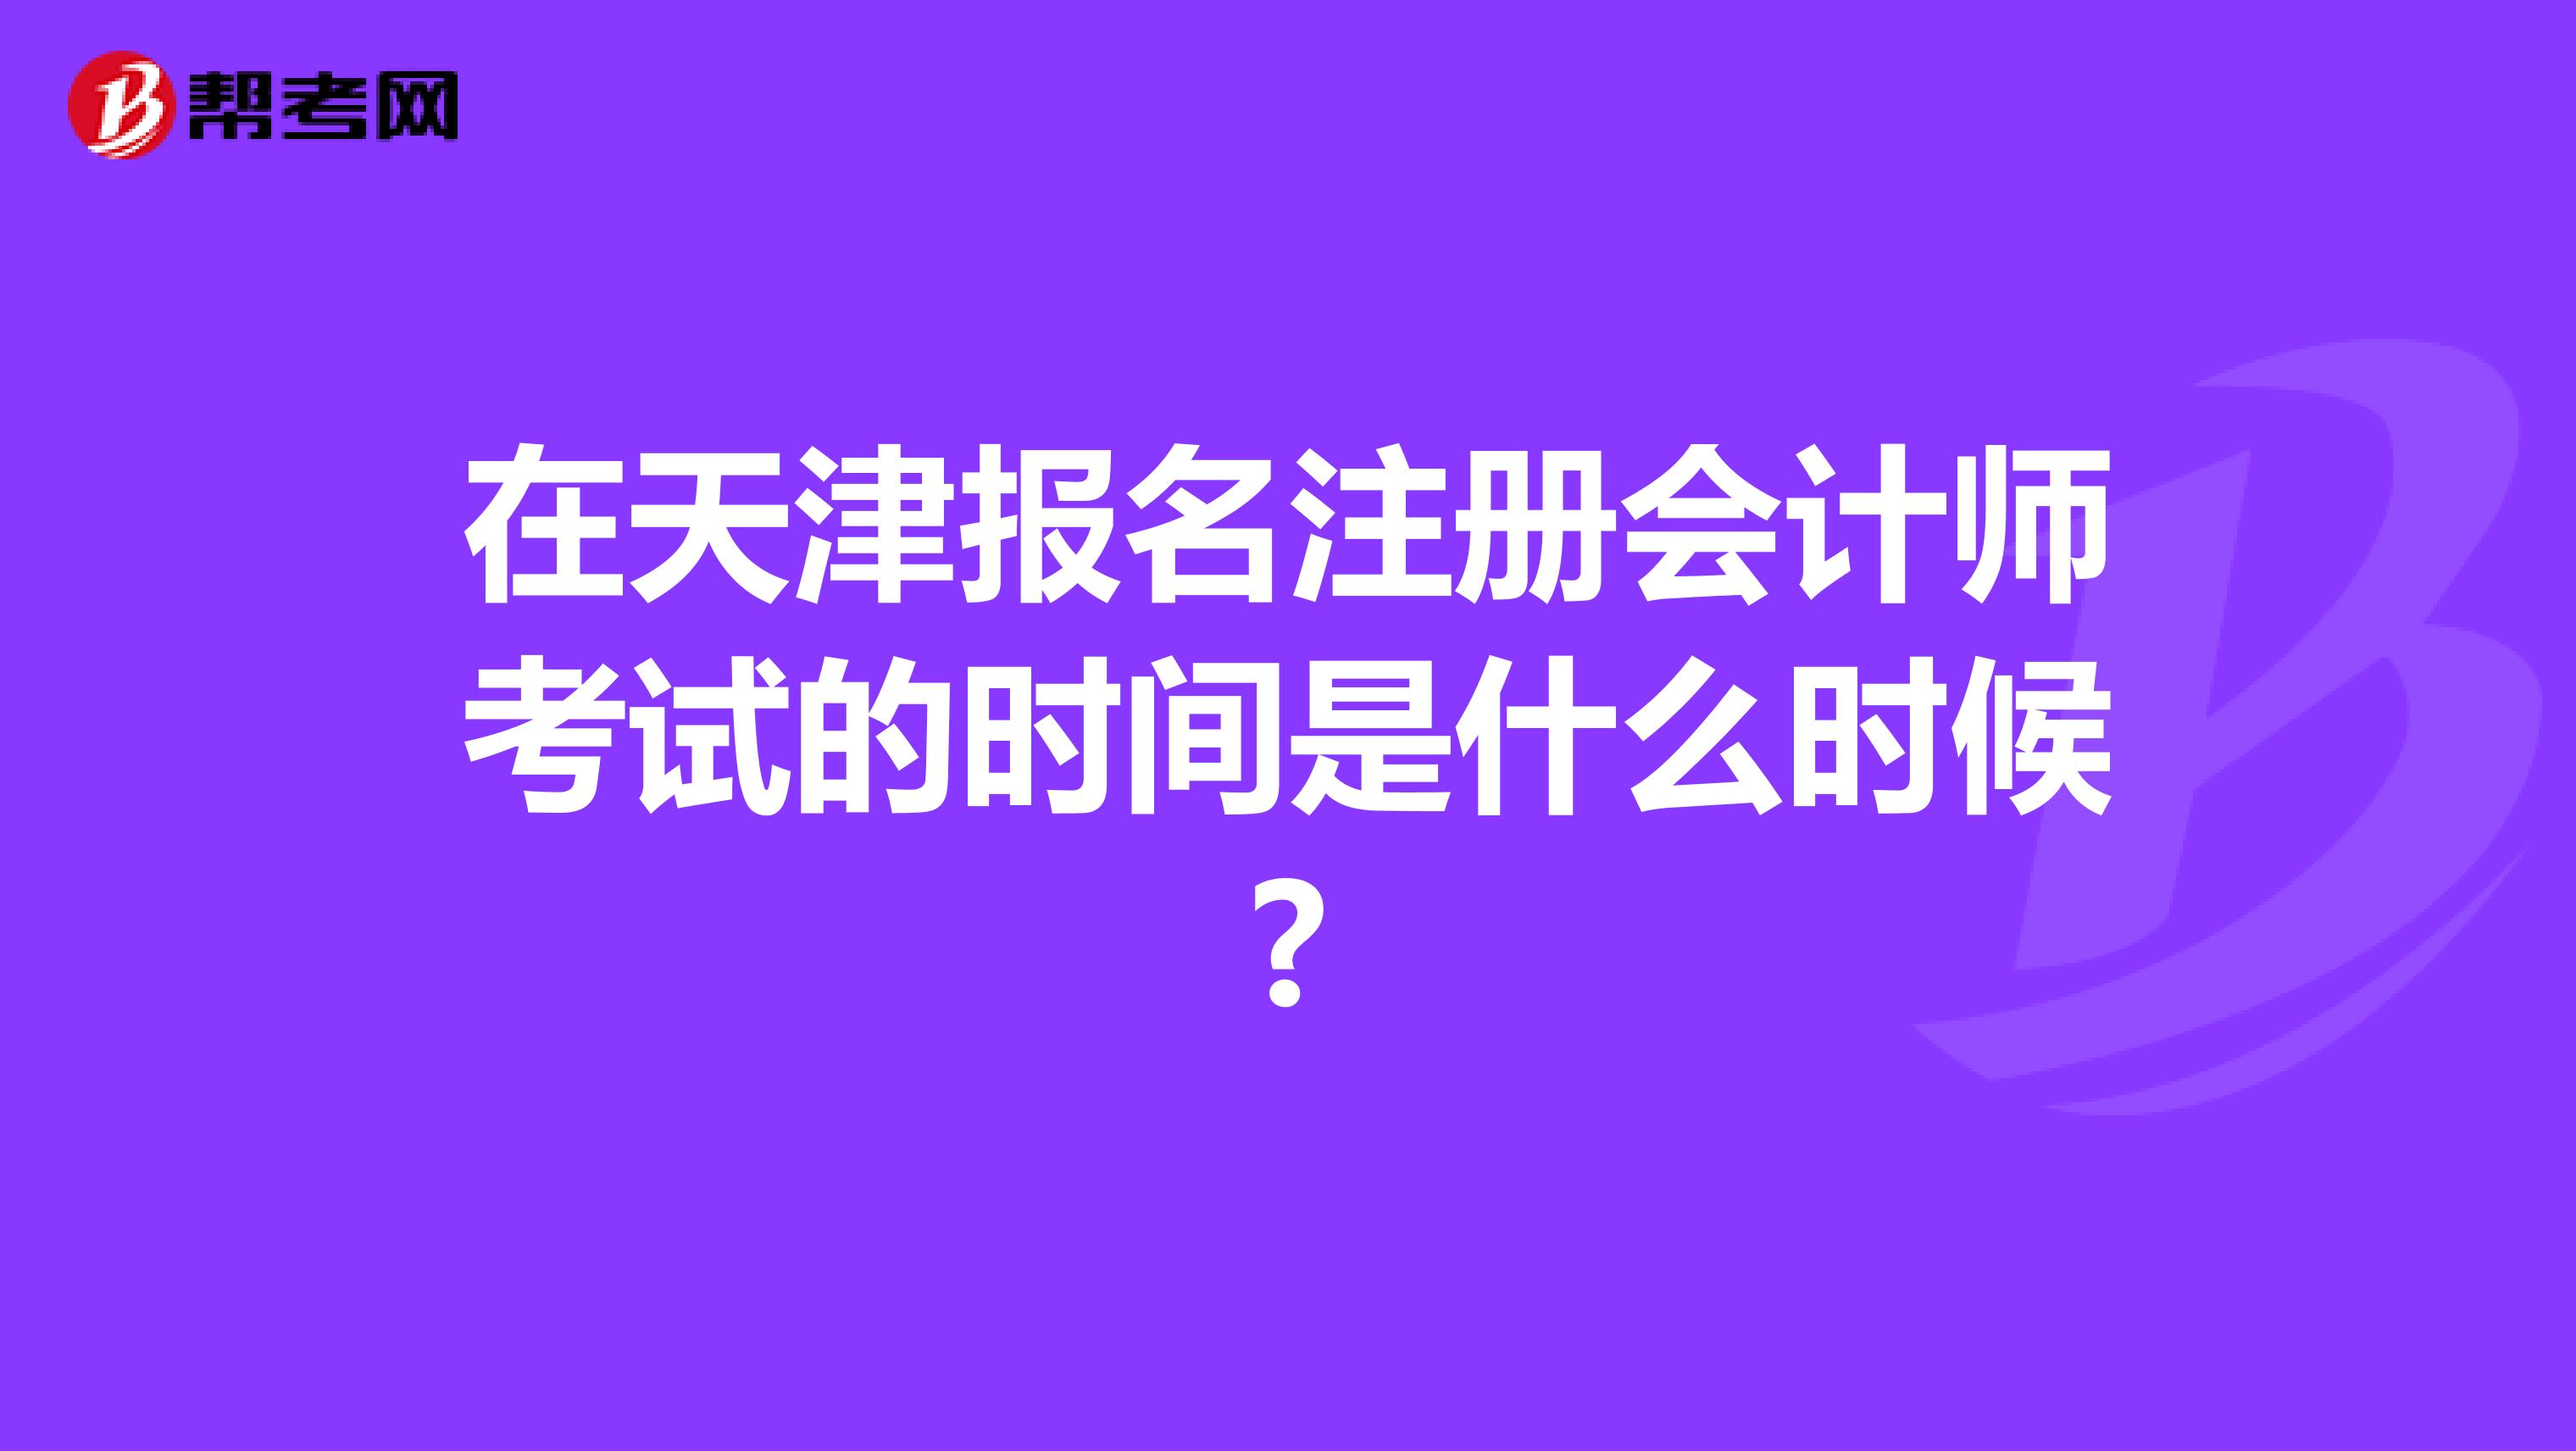 在天津报名注册会计师考试的时间是什么时候?